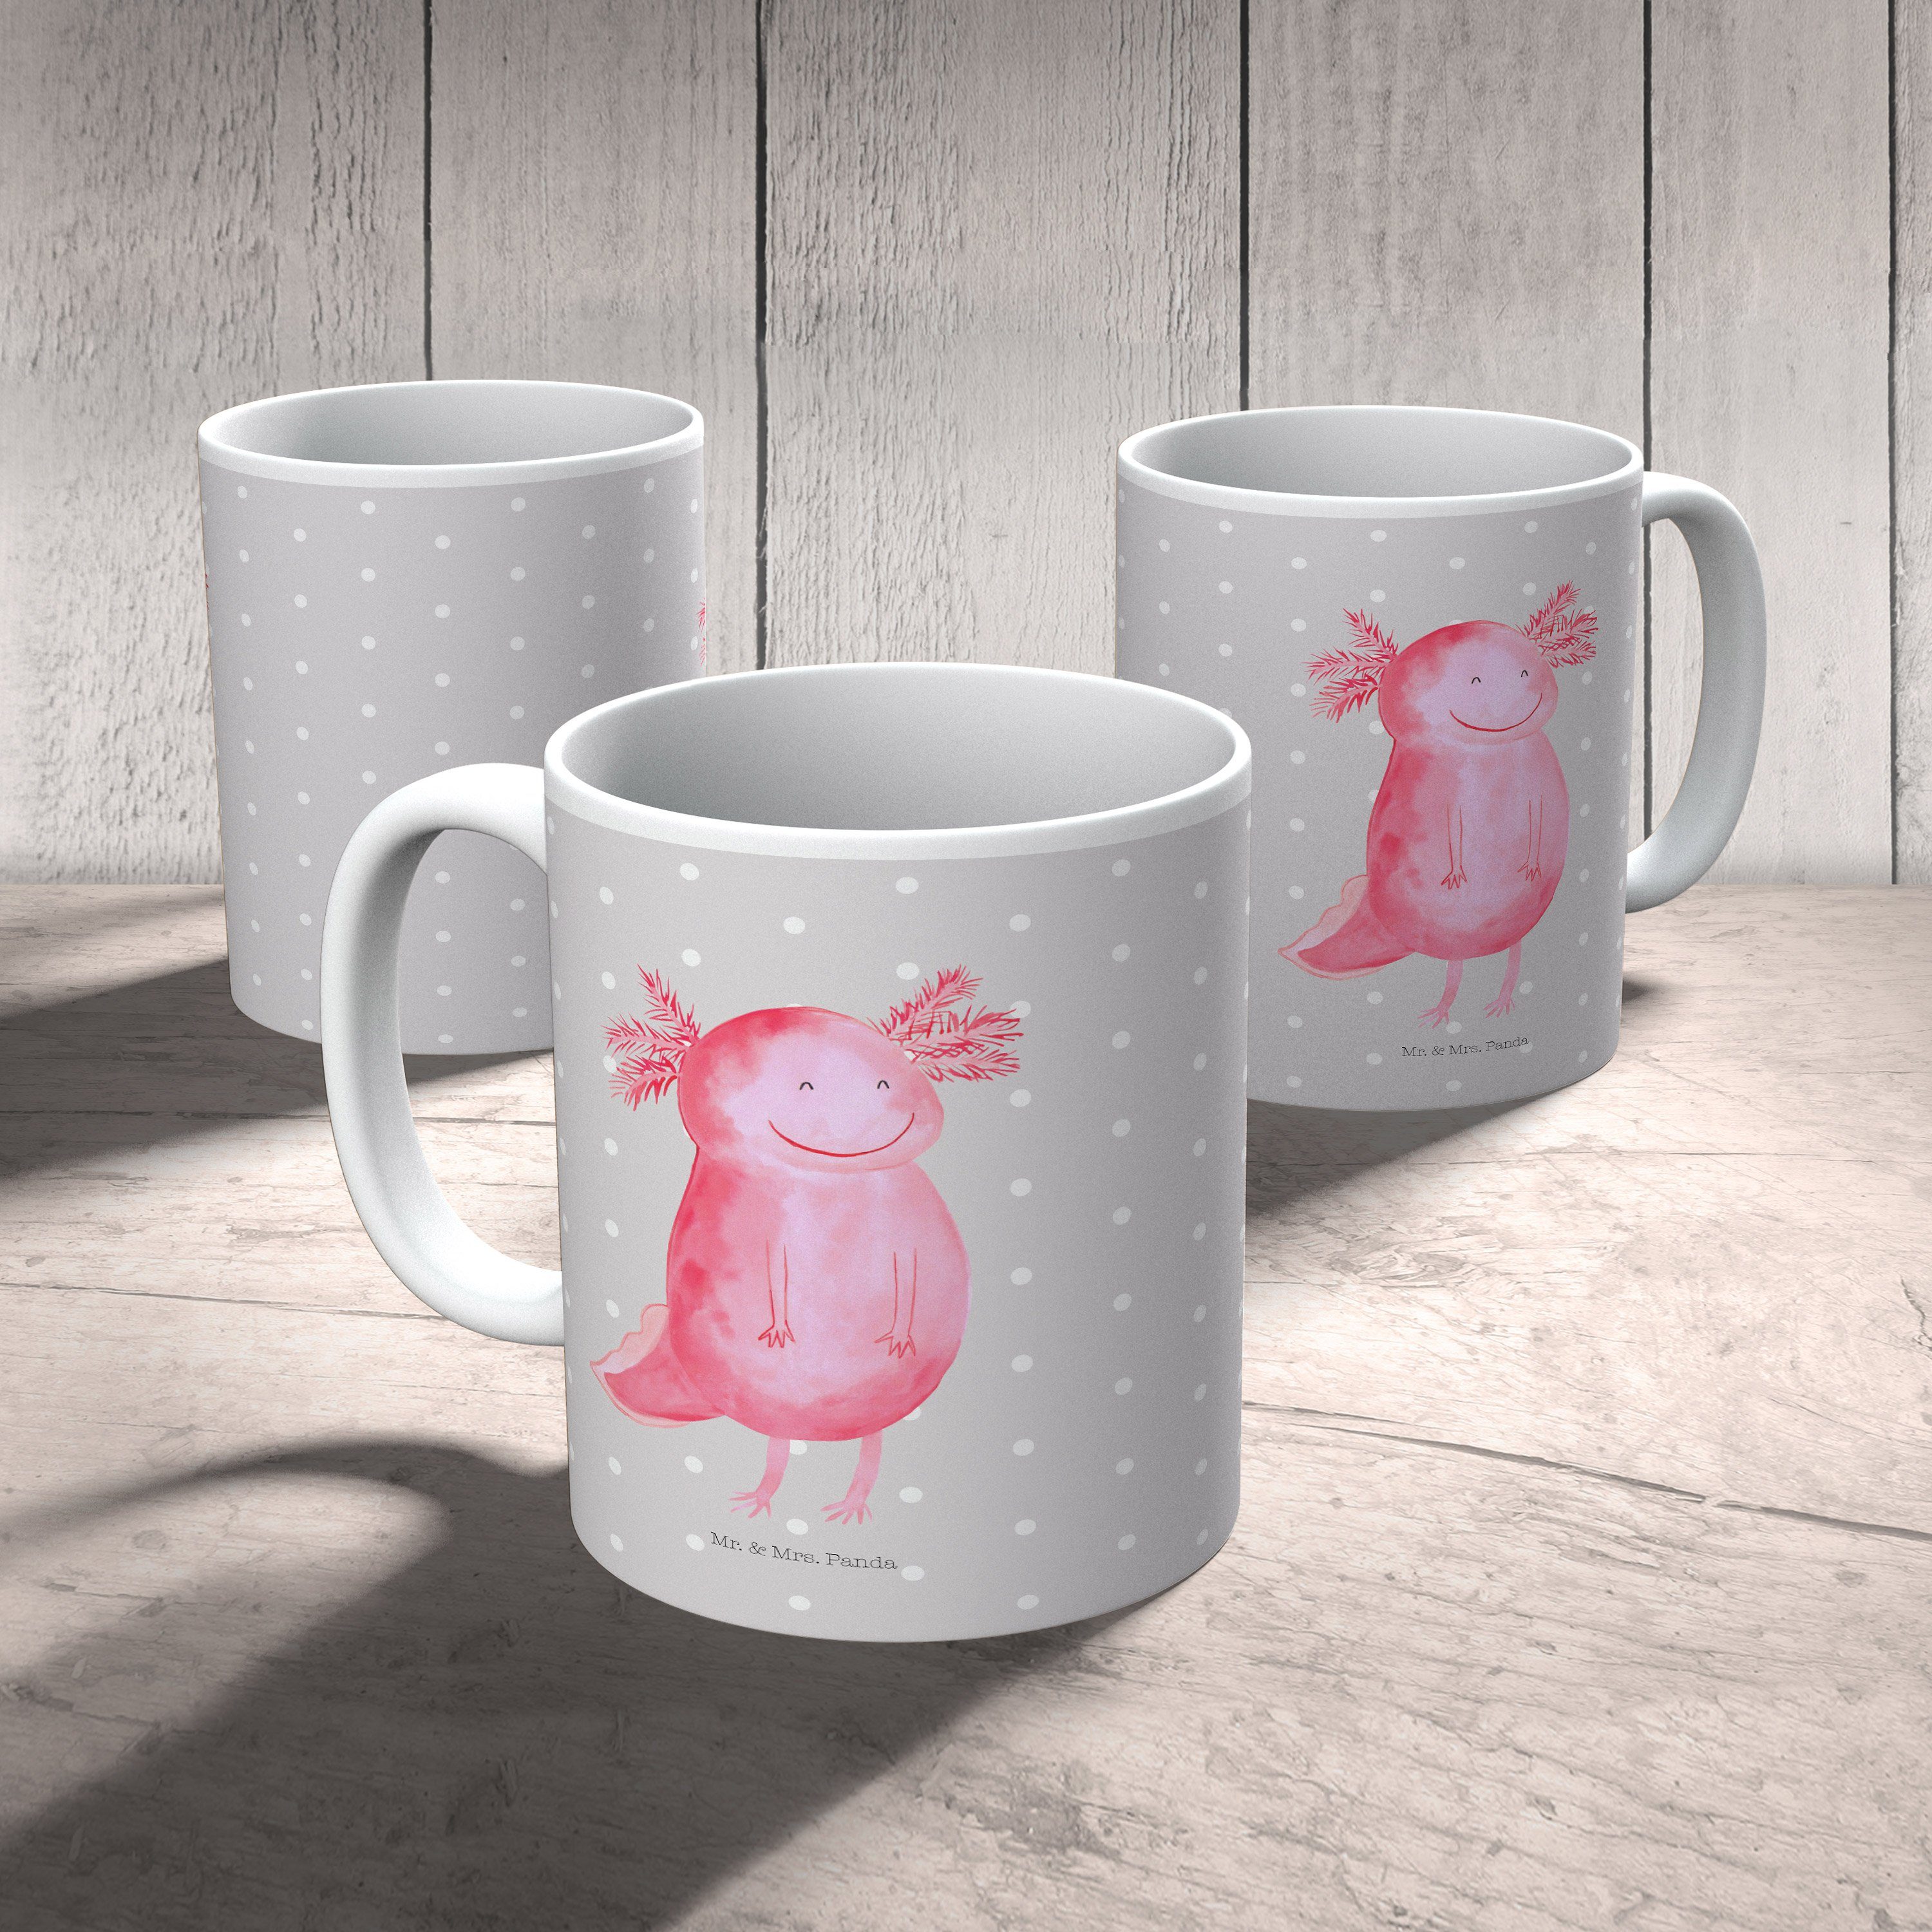 Mrs. Axolotl Geschenk, - Grau Sprüche, Sc, Mr. Pastell Tasse & Keramik Tasse, - Panda glücklich Tasse